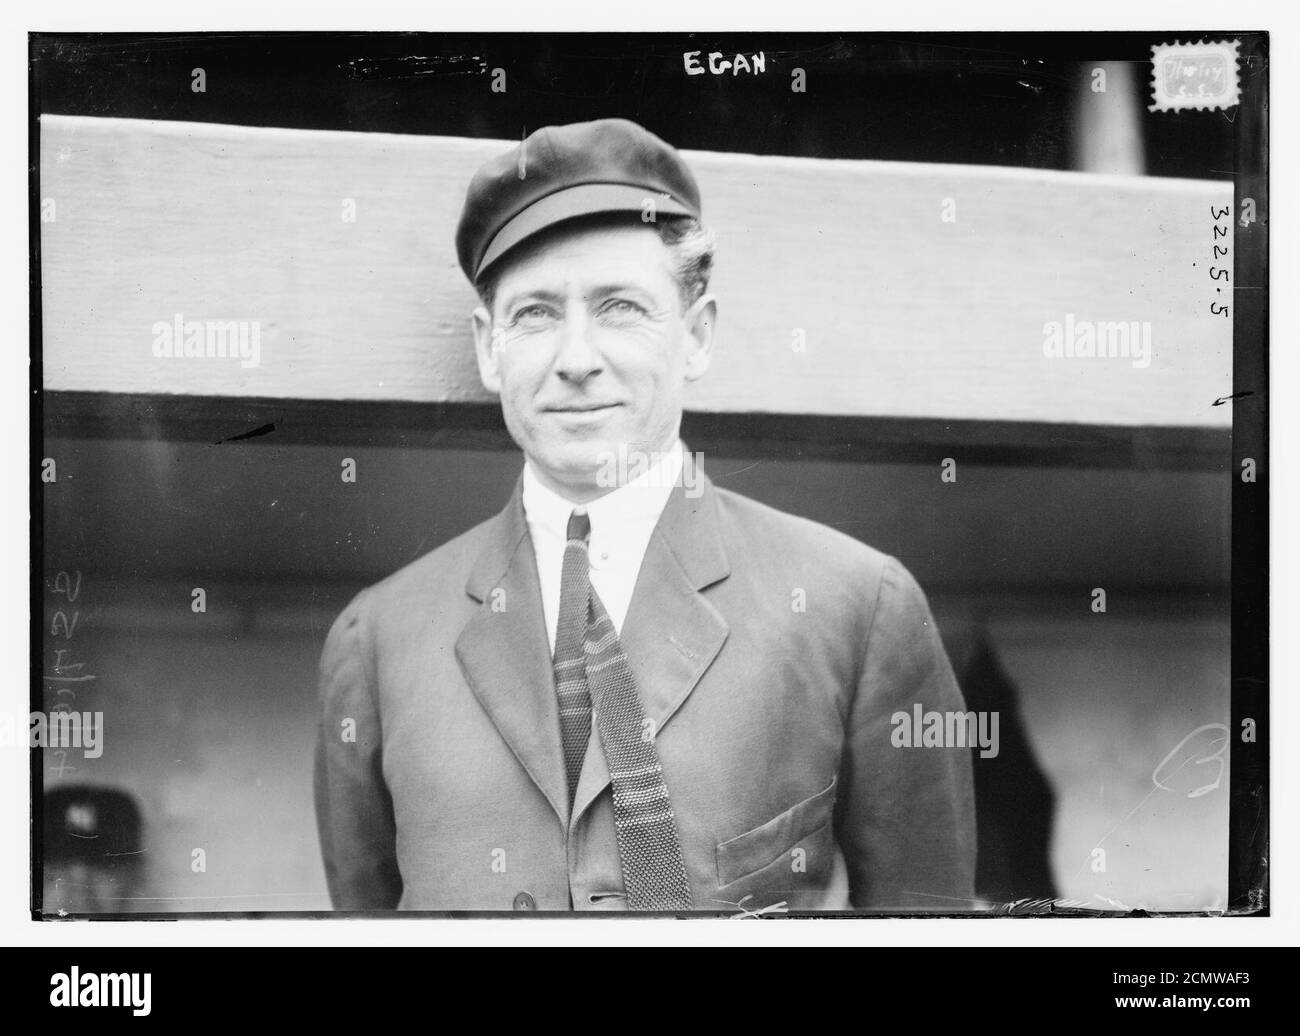 John J. ‘Rip‘ Egan, AL umpire (baseball) Stock Photo